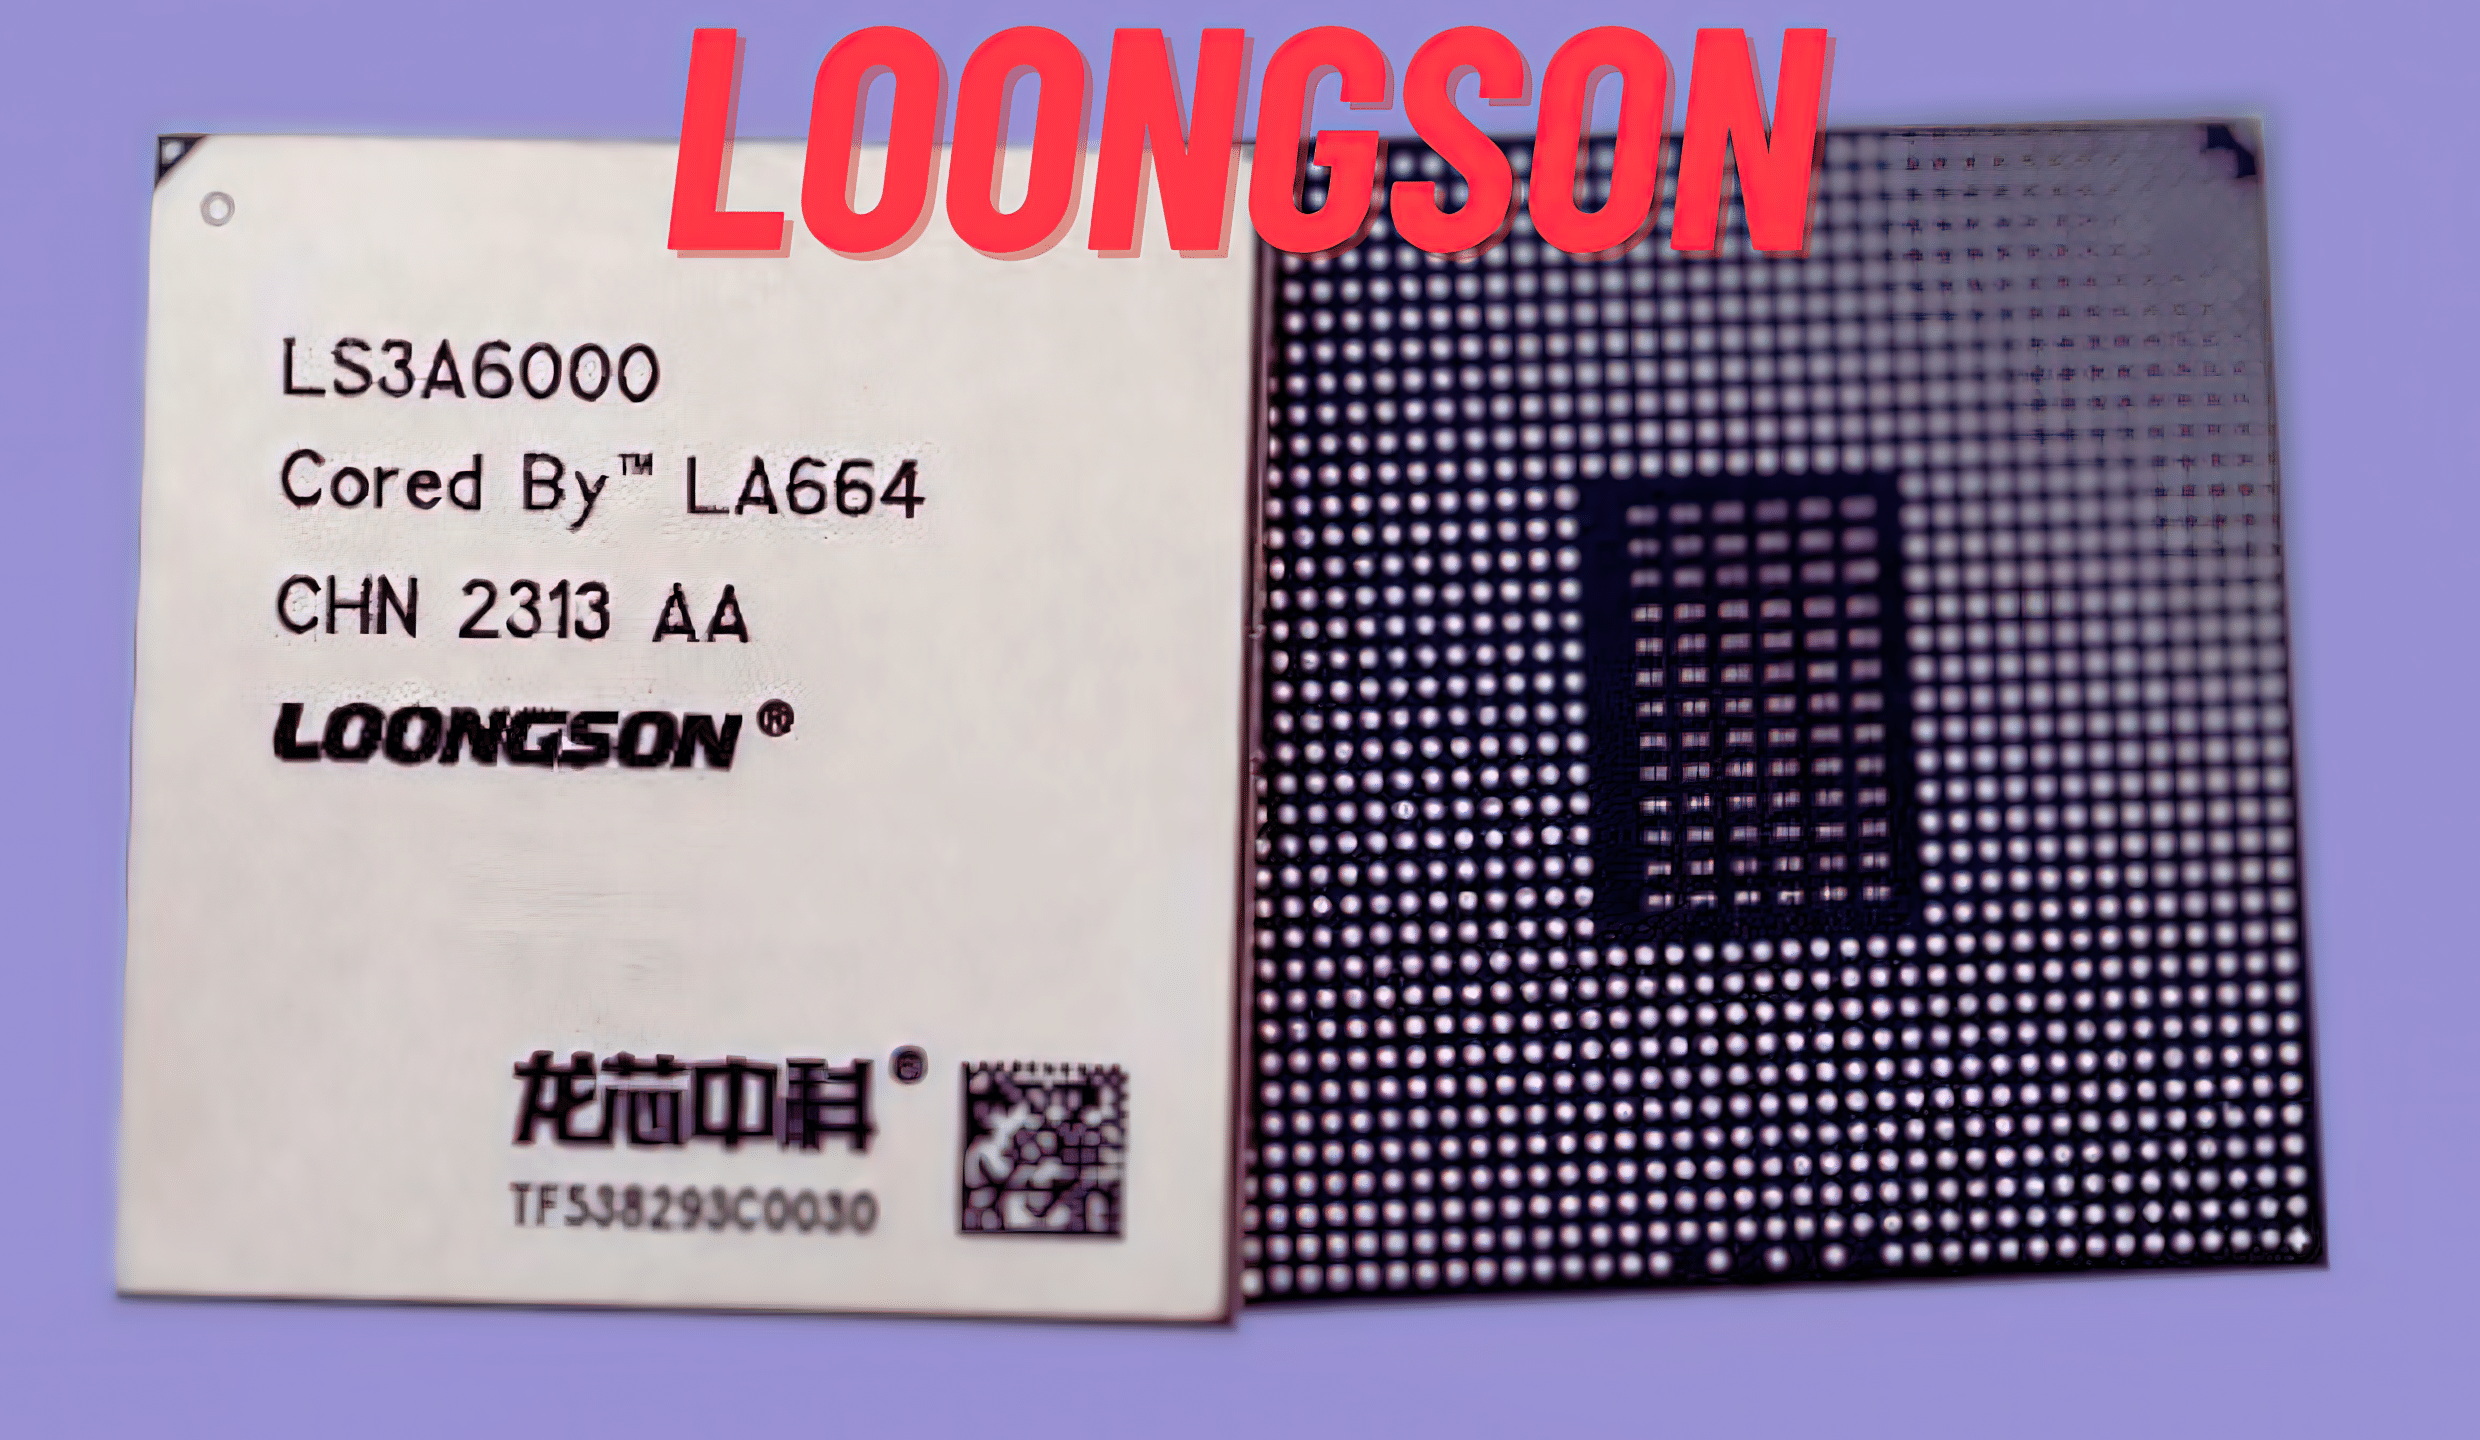 Китайский чип Loongson 3A6000 готов к массовому производству — обещана производительность уровня Intel Core i3 10-го поколения